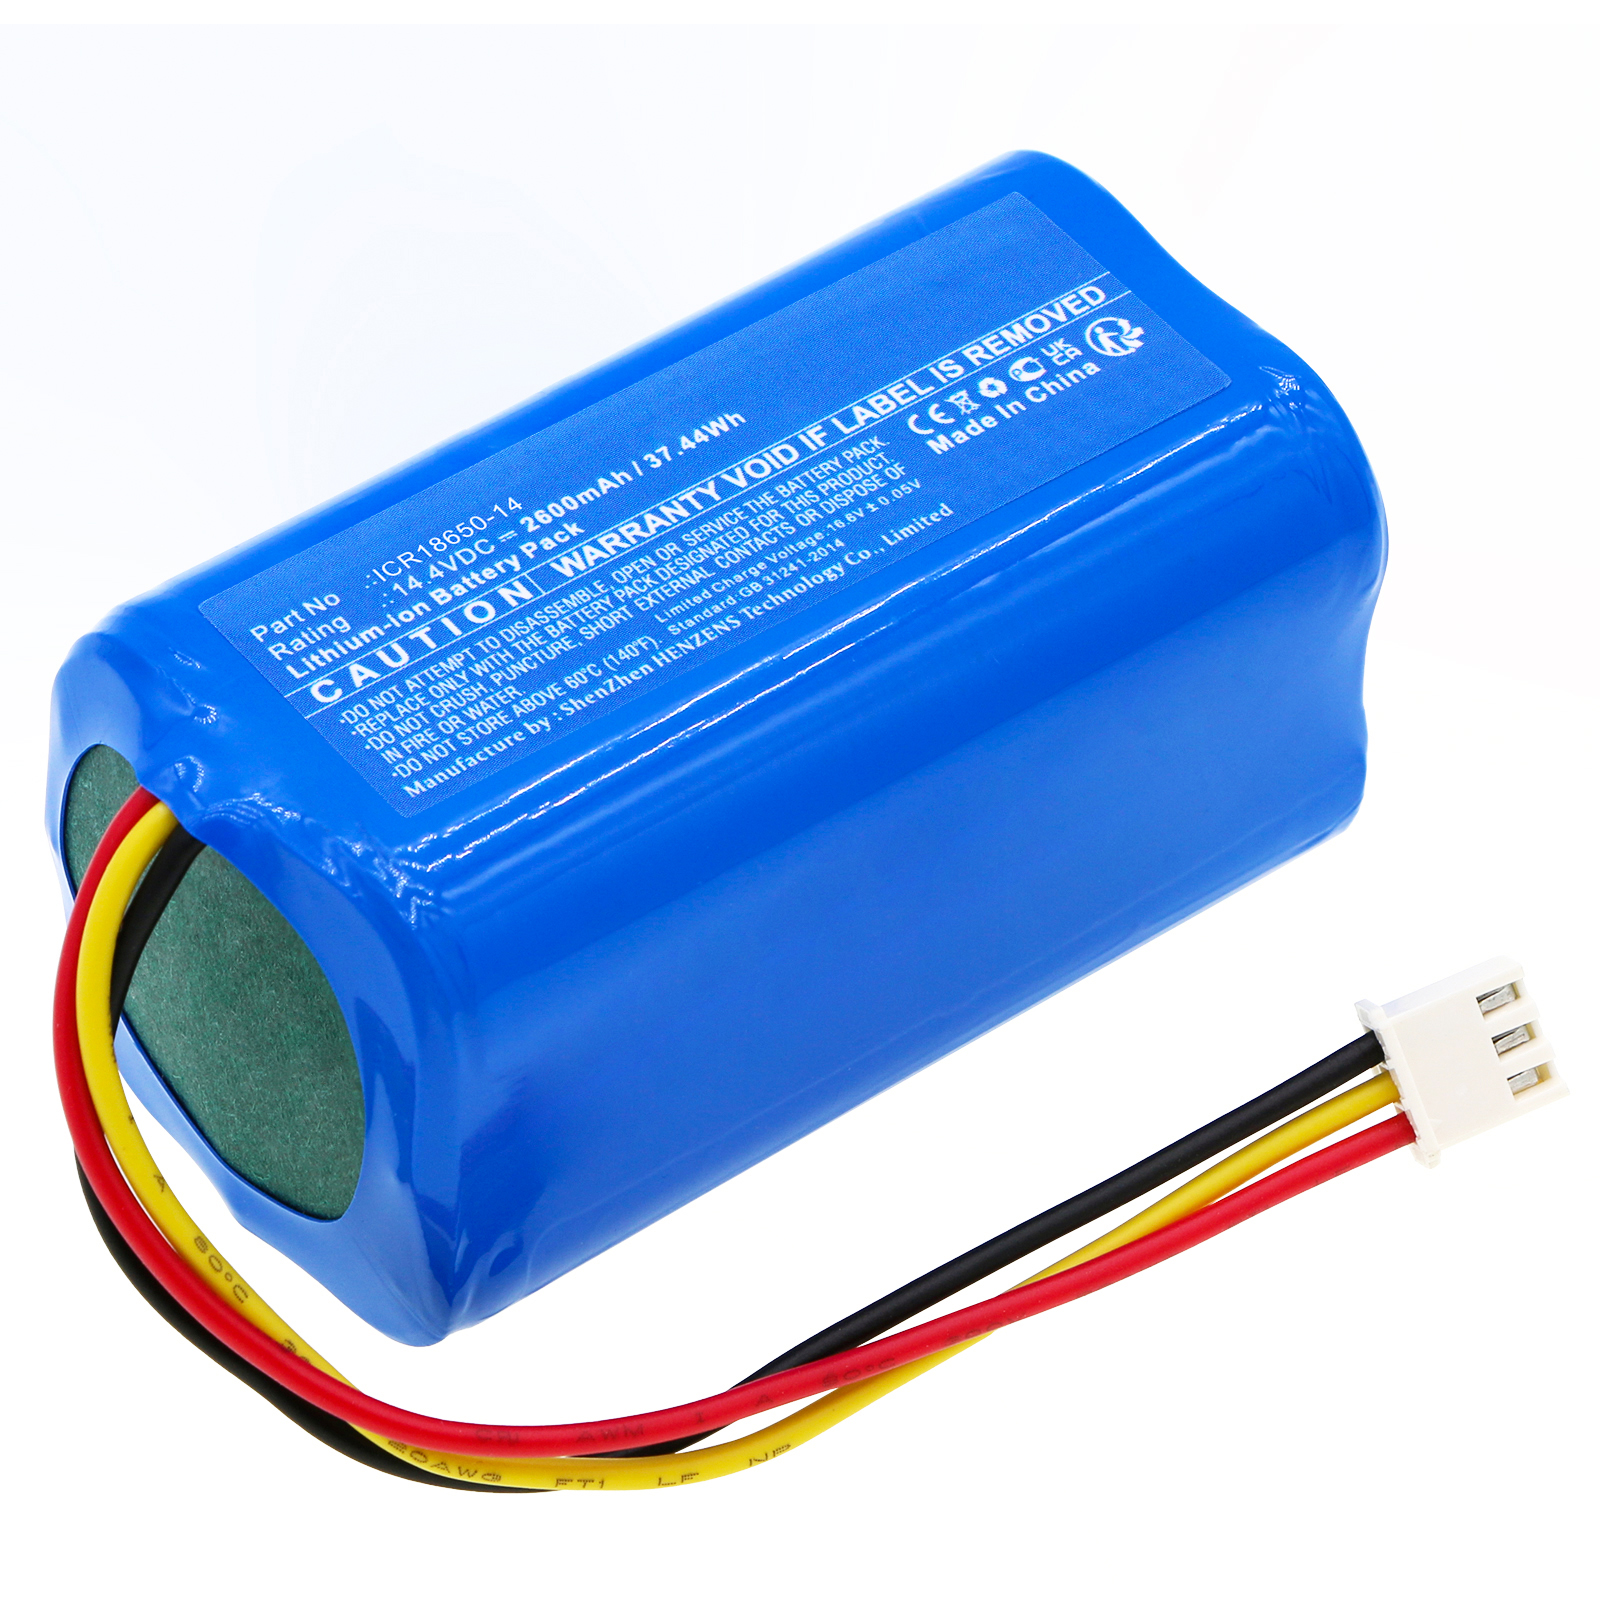 Synergy Digital Vacuum Cleaner Battery, Compatible with CECOTEC ICR18650-14 Vacuum Cleaner Battery (Li-ion, 14.4V, 2600mAh)